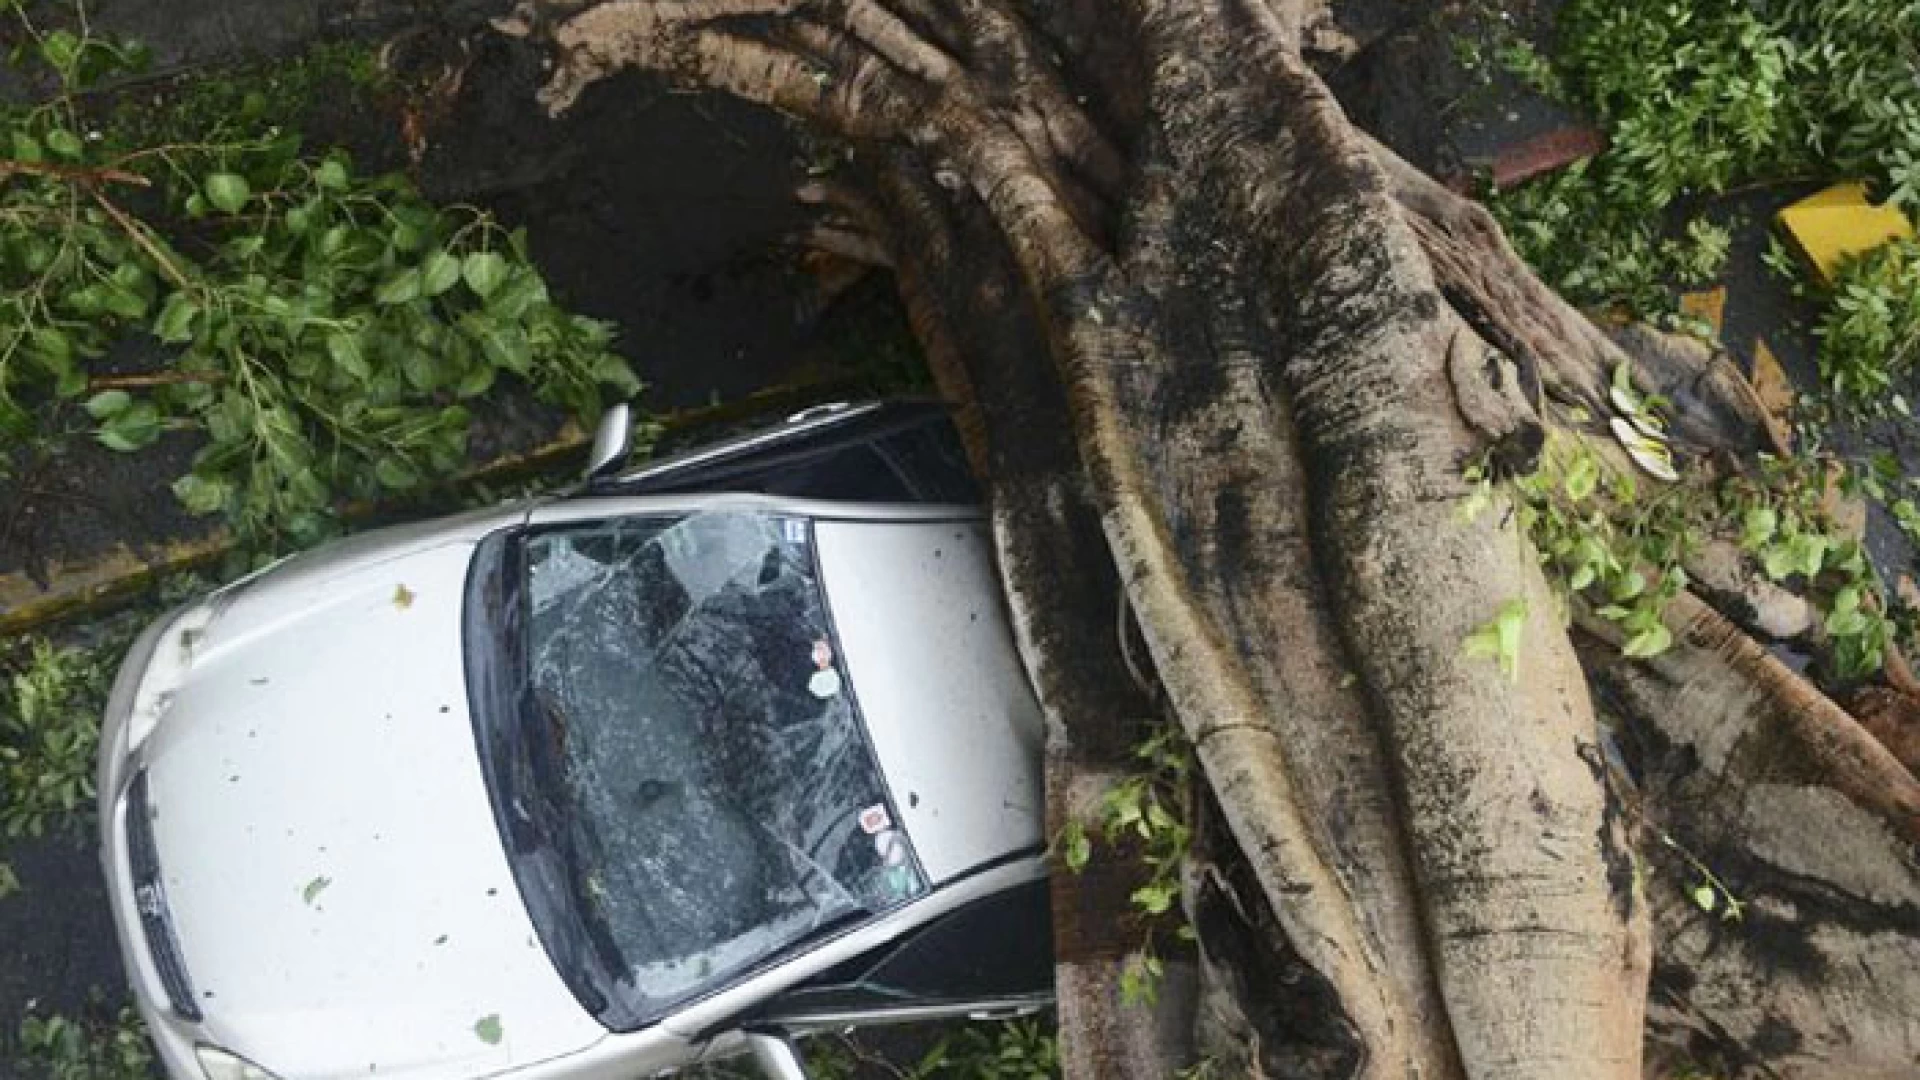 Vairano Patenora: albero sradicato dal vento schiaccia autovettura in sosta. Fortunatamente all’interno non vi erano passeggeri.